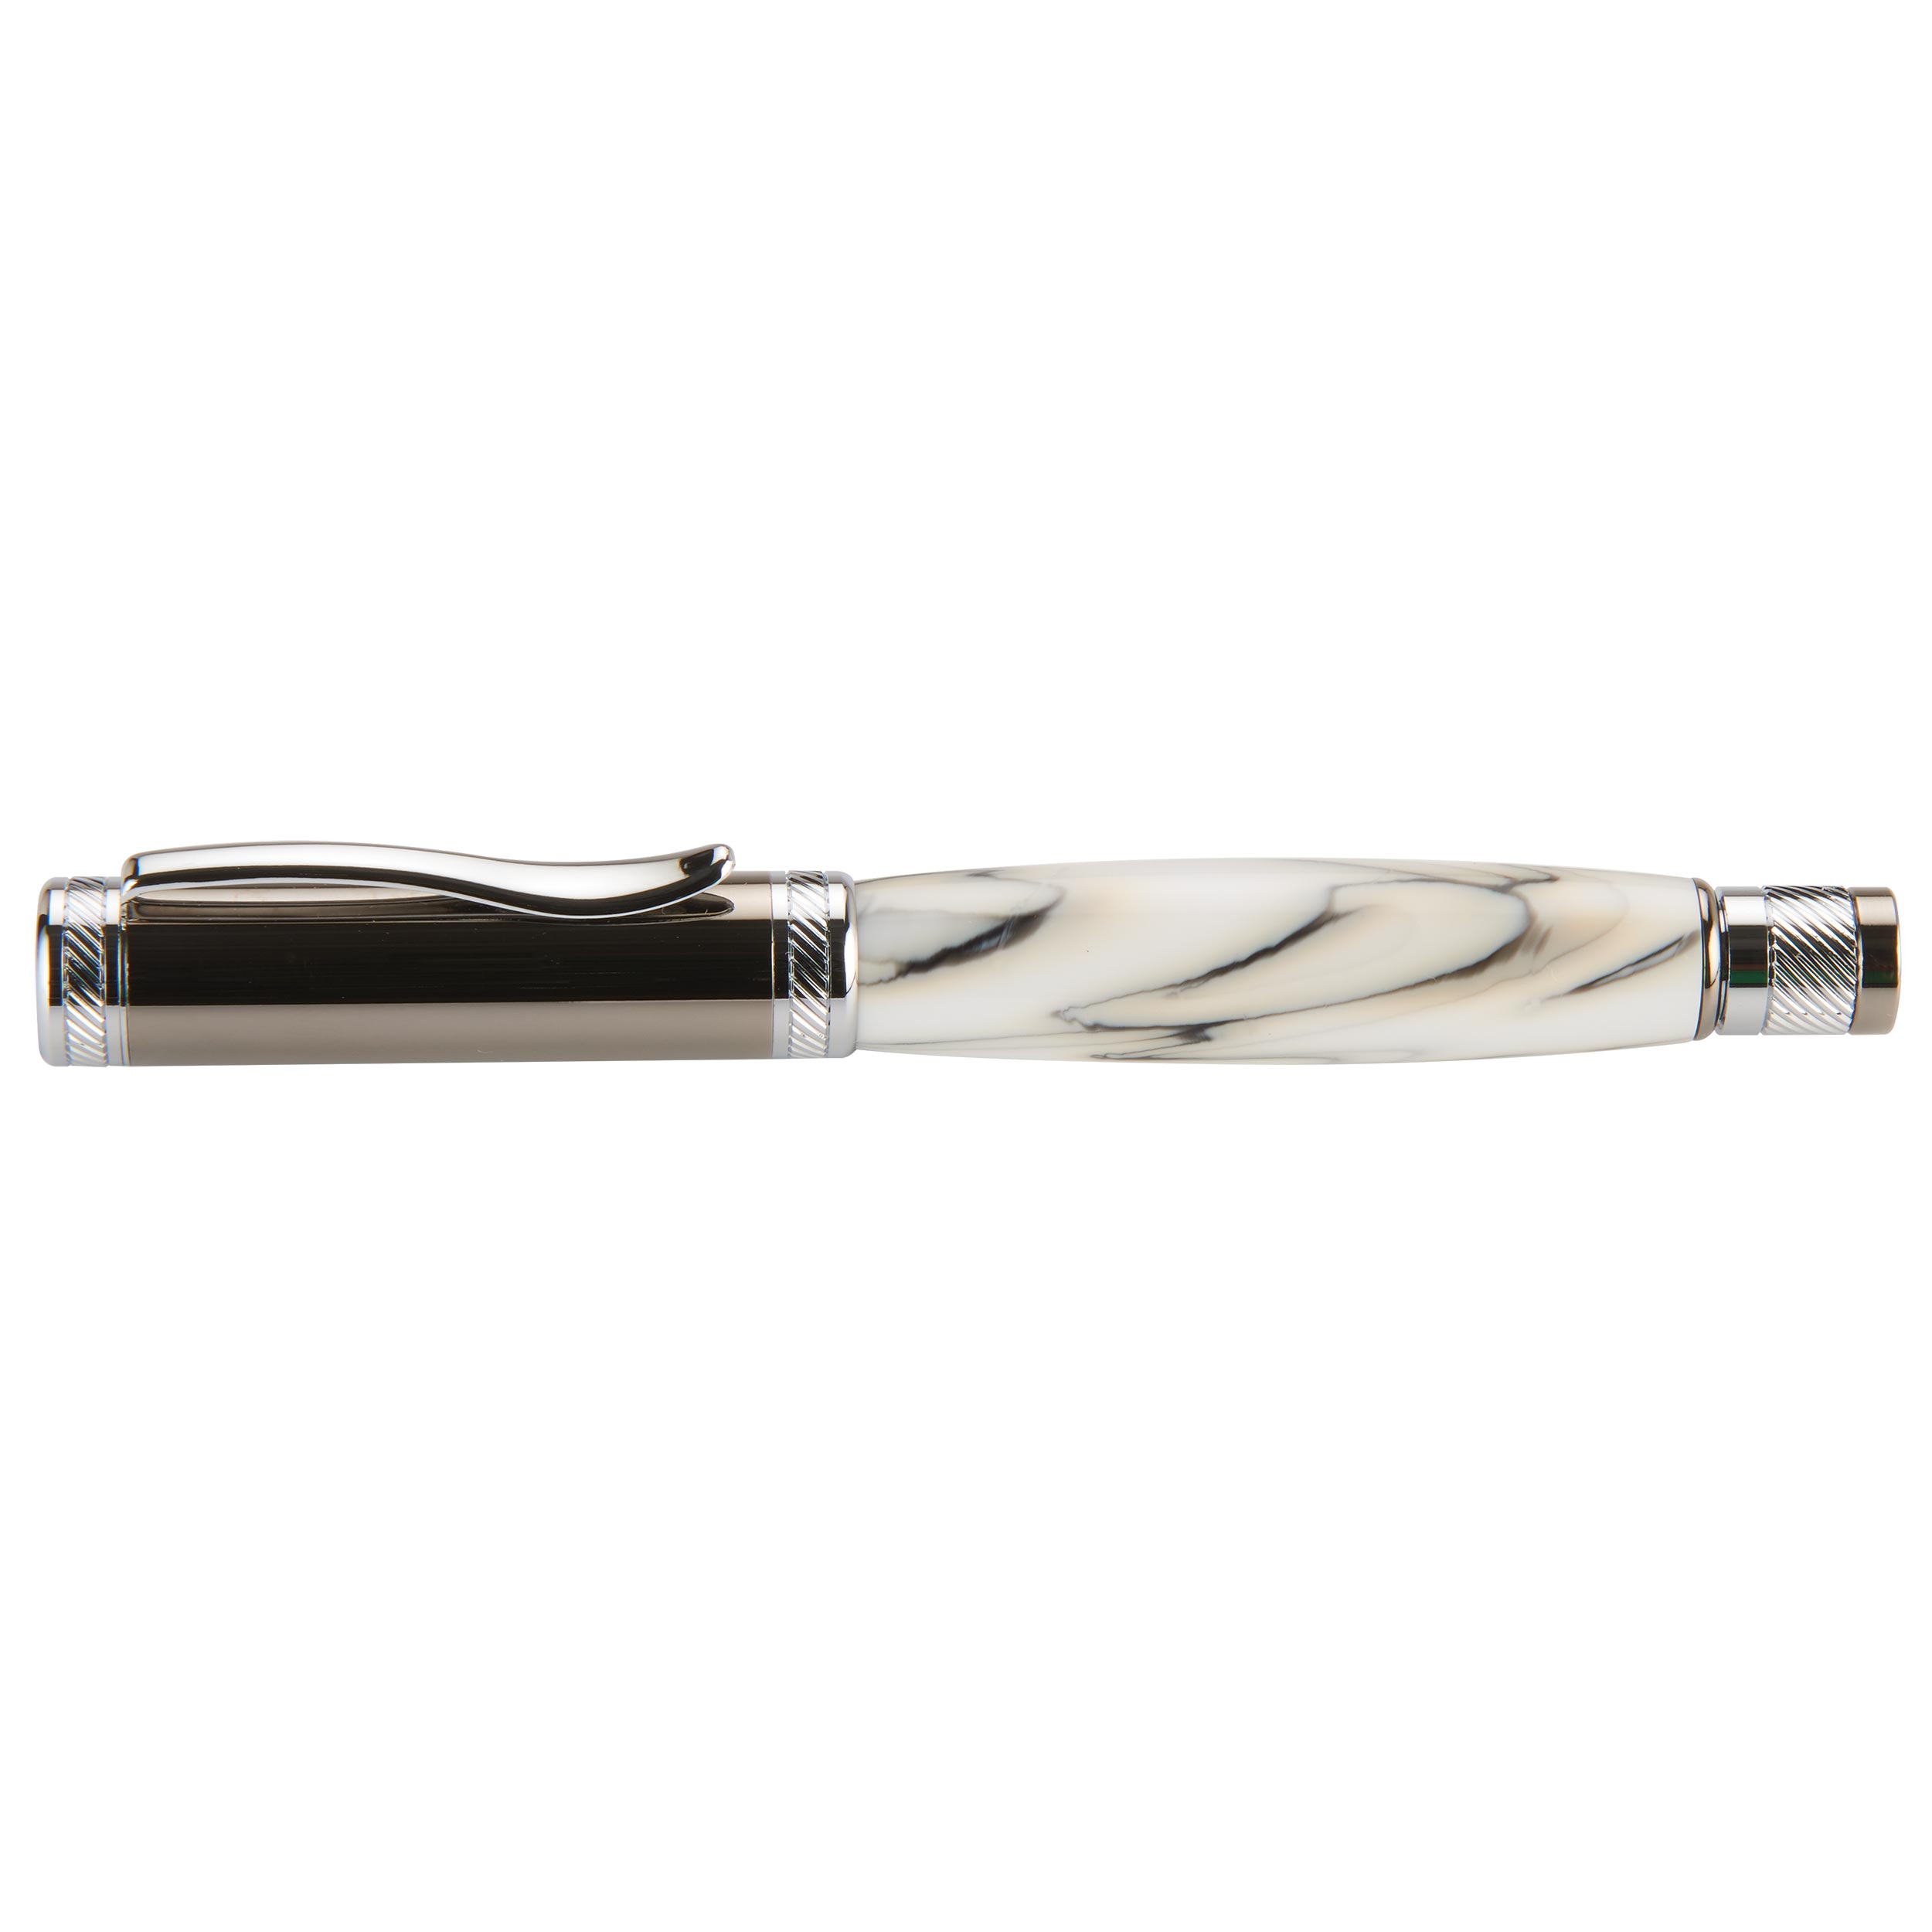 Attraction Magnetic Ballpoint Pen Kit - Gunmetal & Chrome